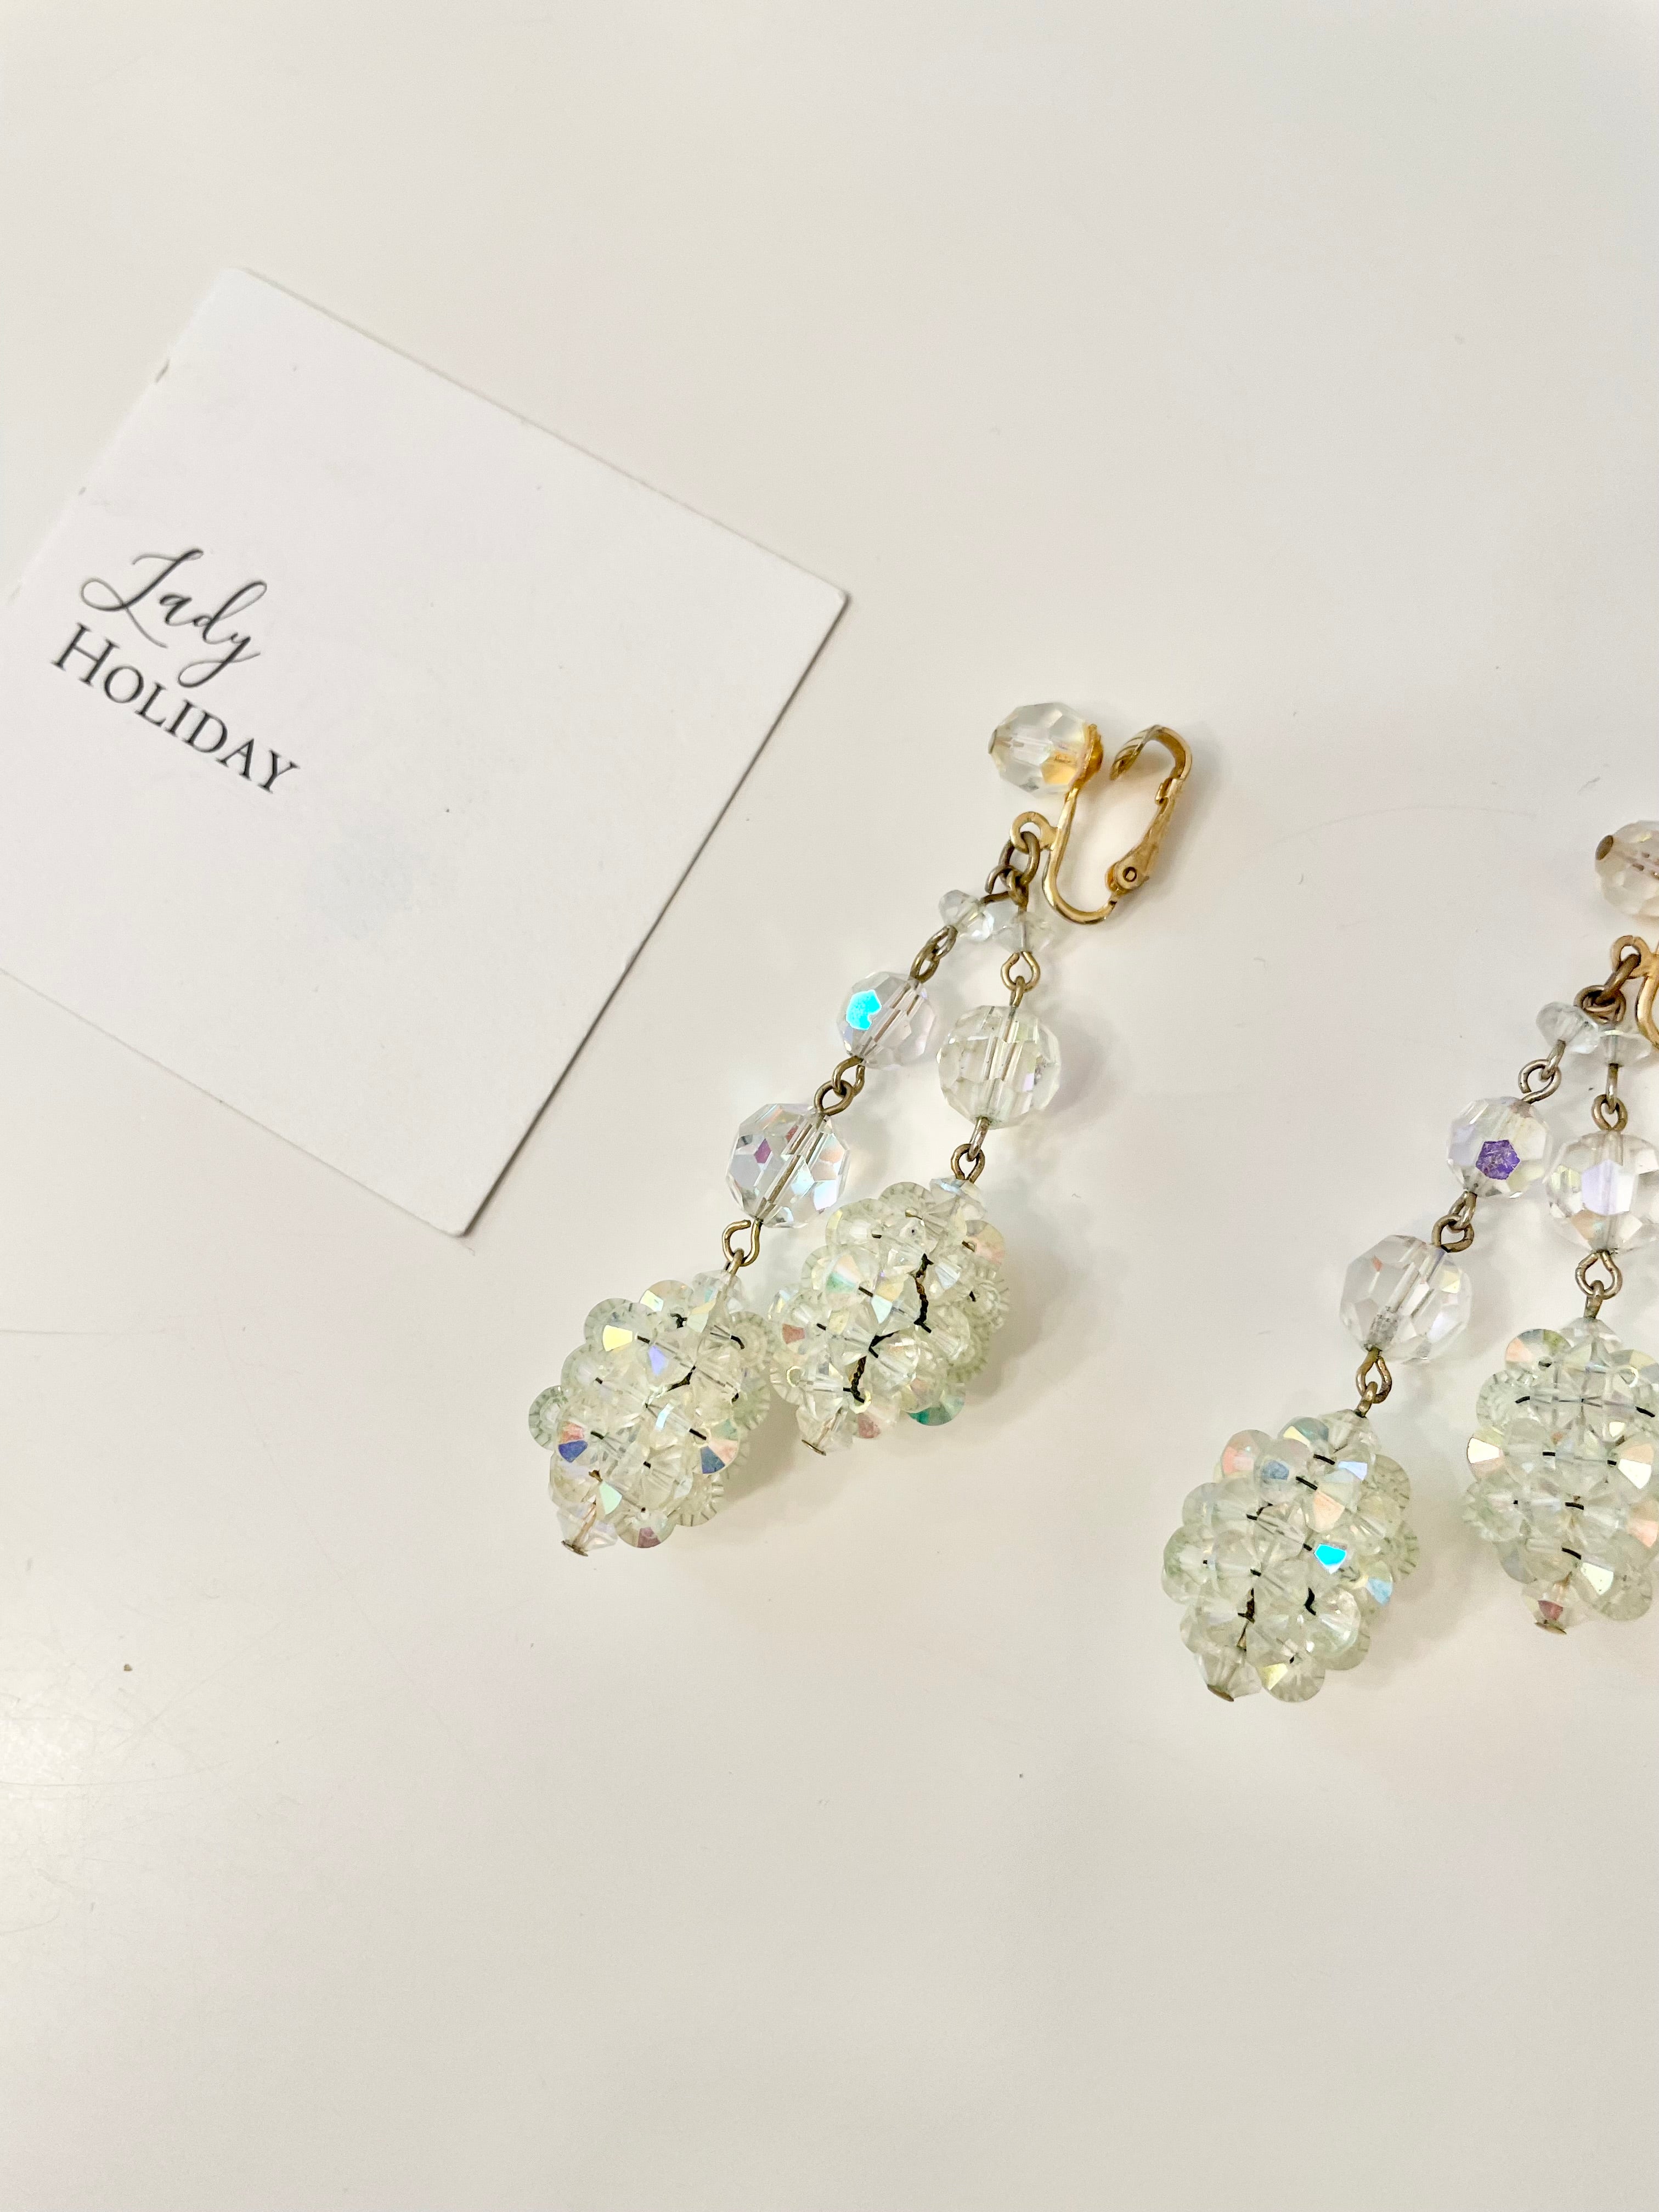 1960's Bergere Austrian crystal drop earrings... so delightful!